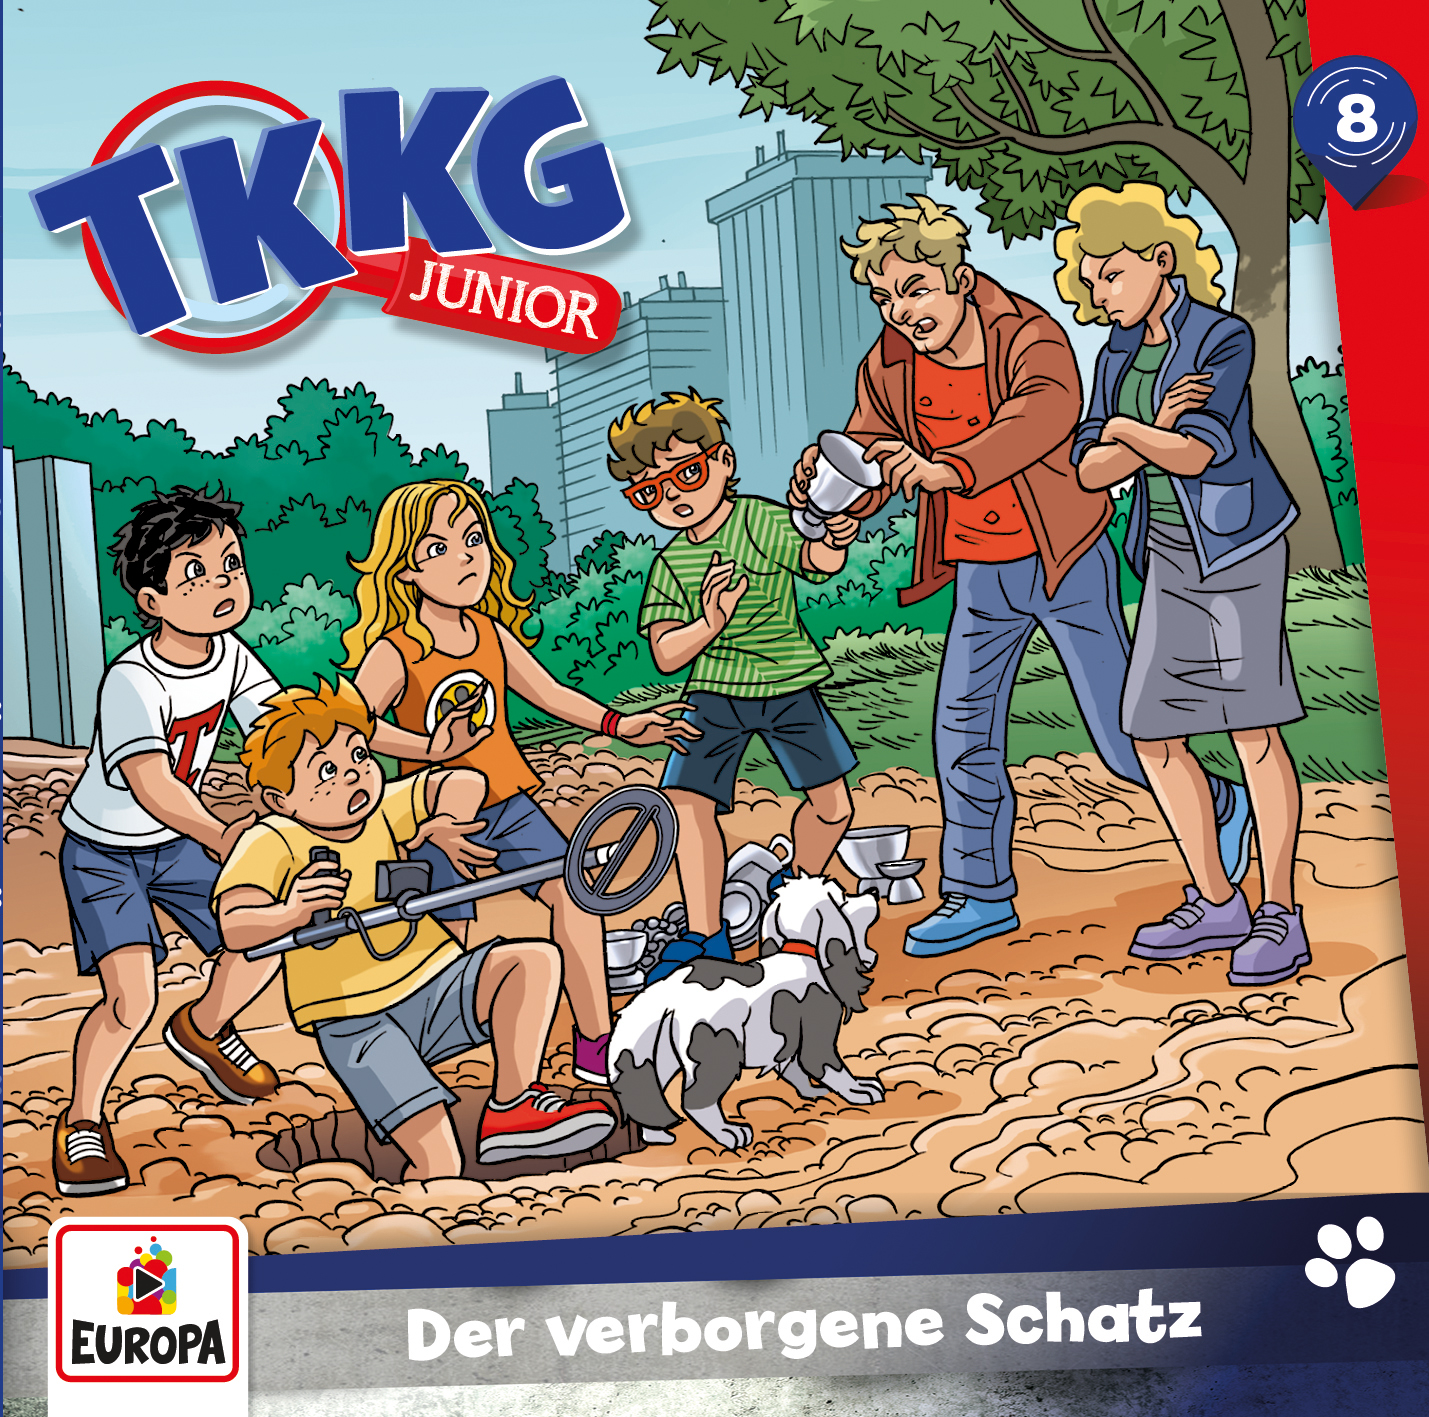 TKKG Junior - Der verborgene Schatz